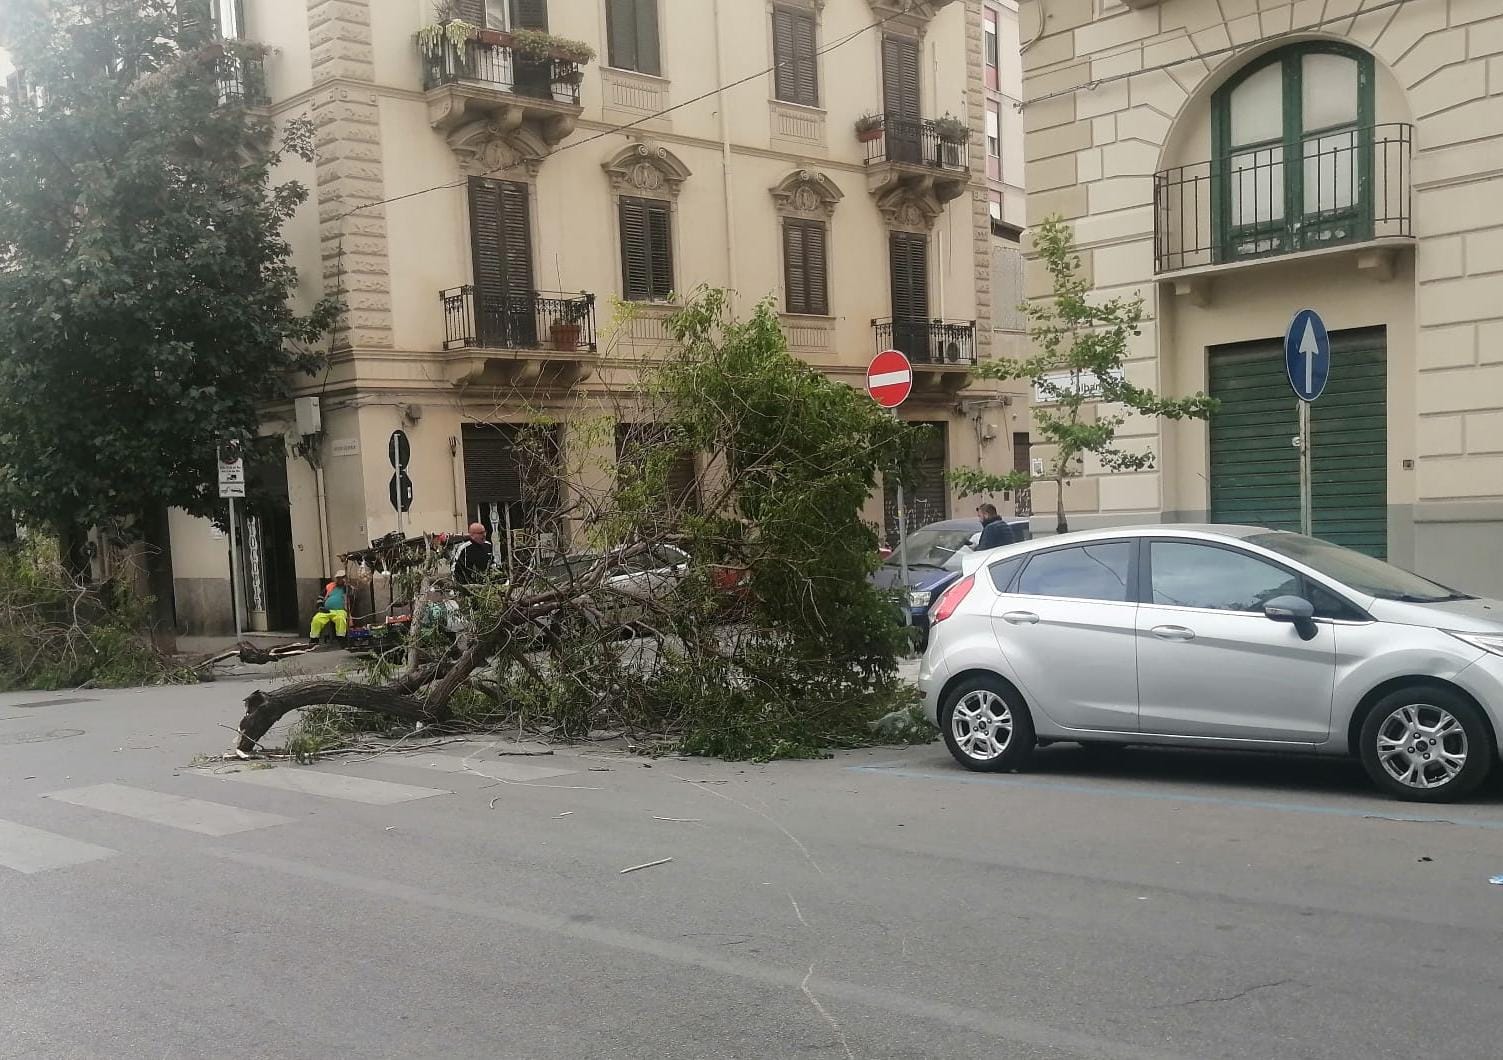 Maltempo a Palermo. Il forte vento purtroppo ha fatto strage di alberi che certamente non godevano di salute e nemmeno di manutenzione